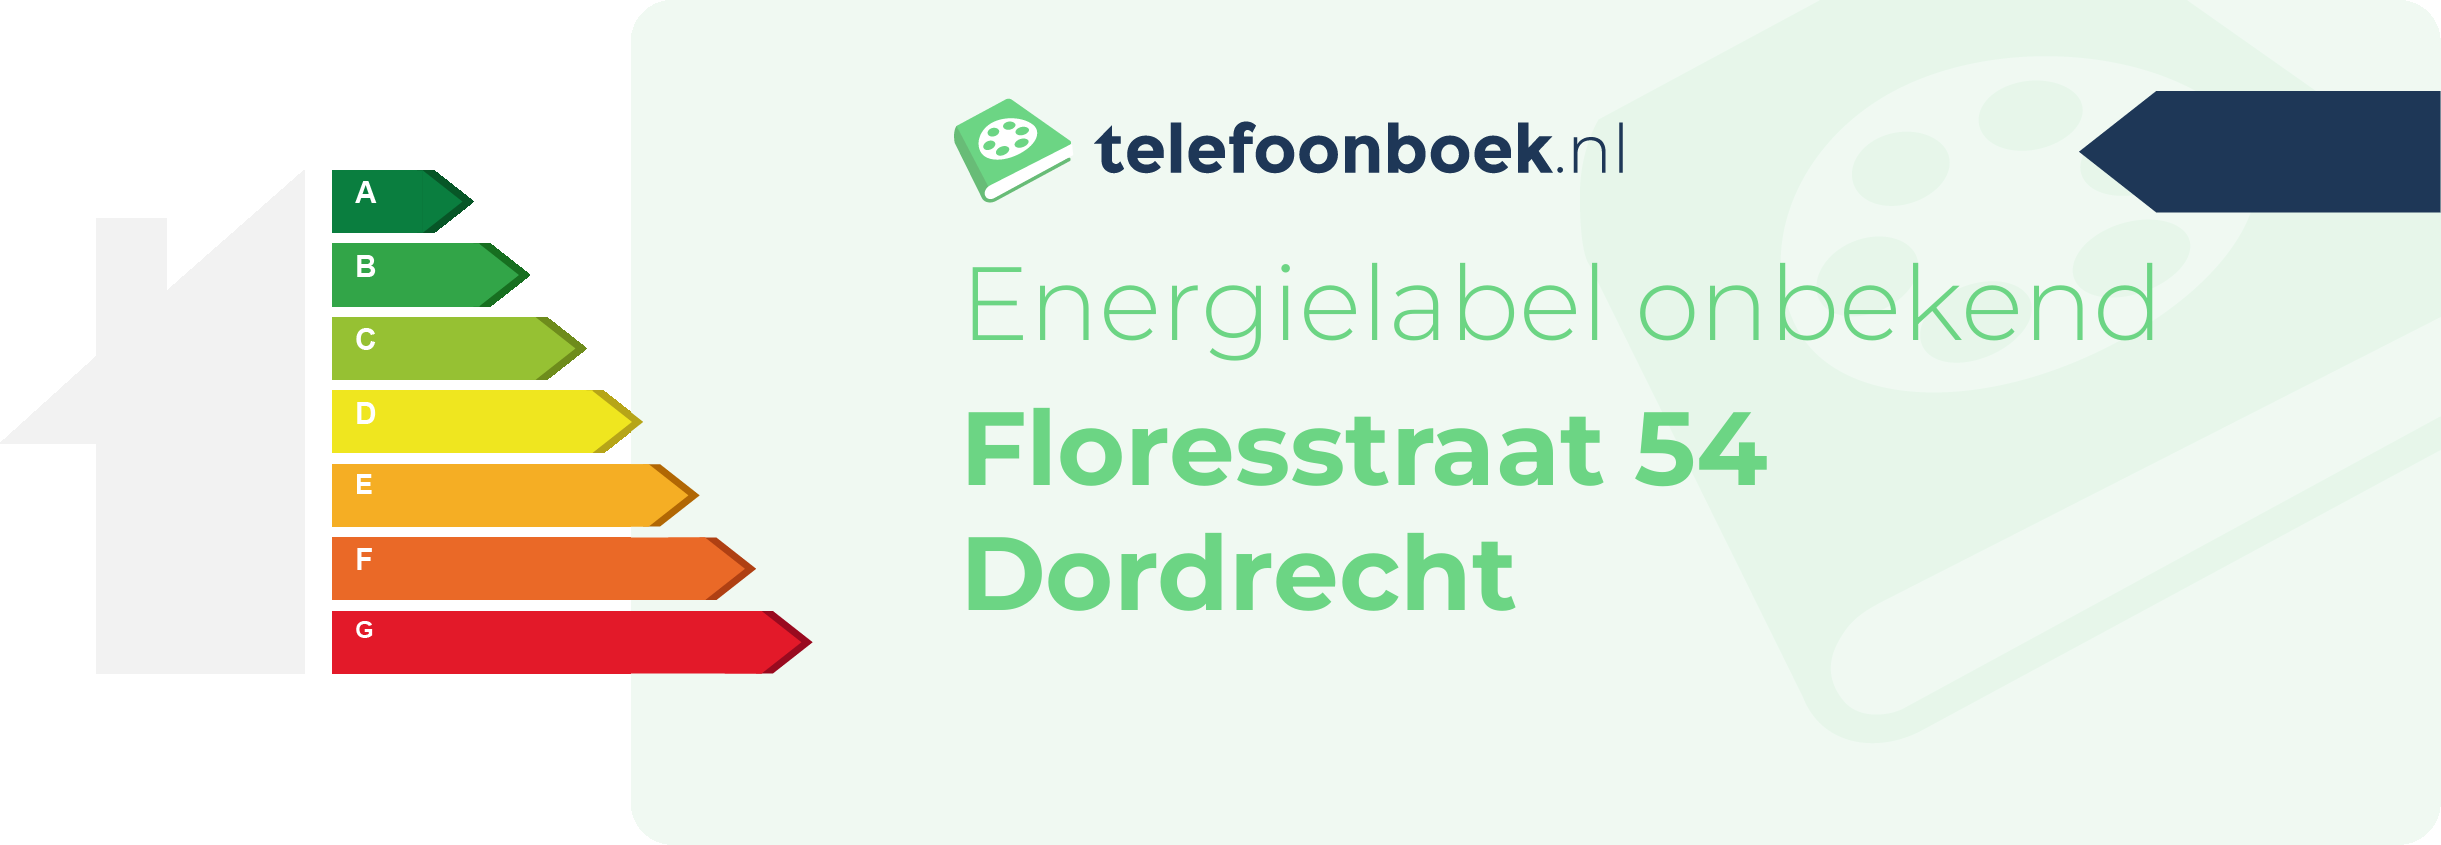 Energielabel Floresstraat 54 Dordrecht